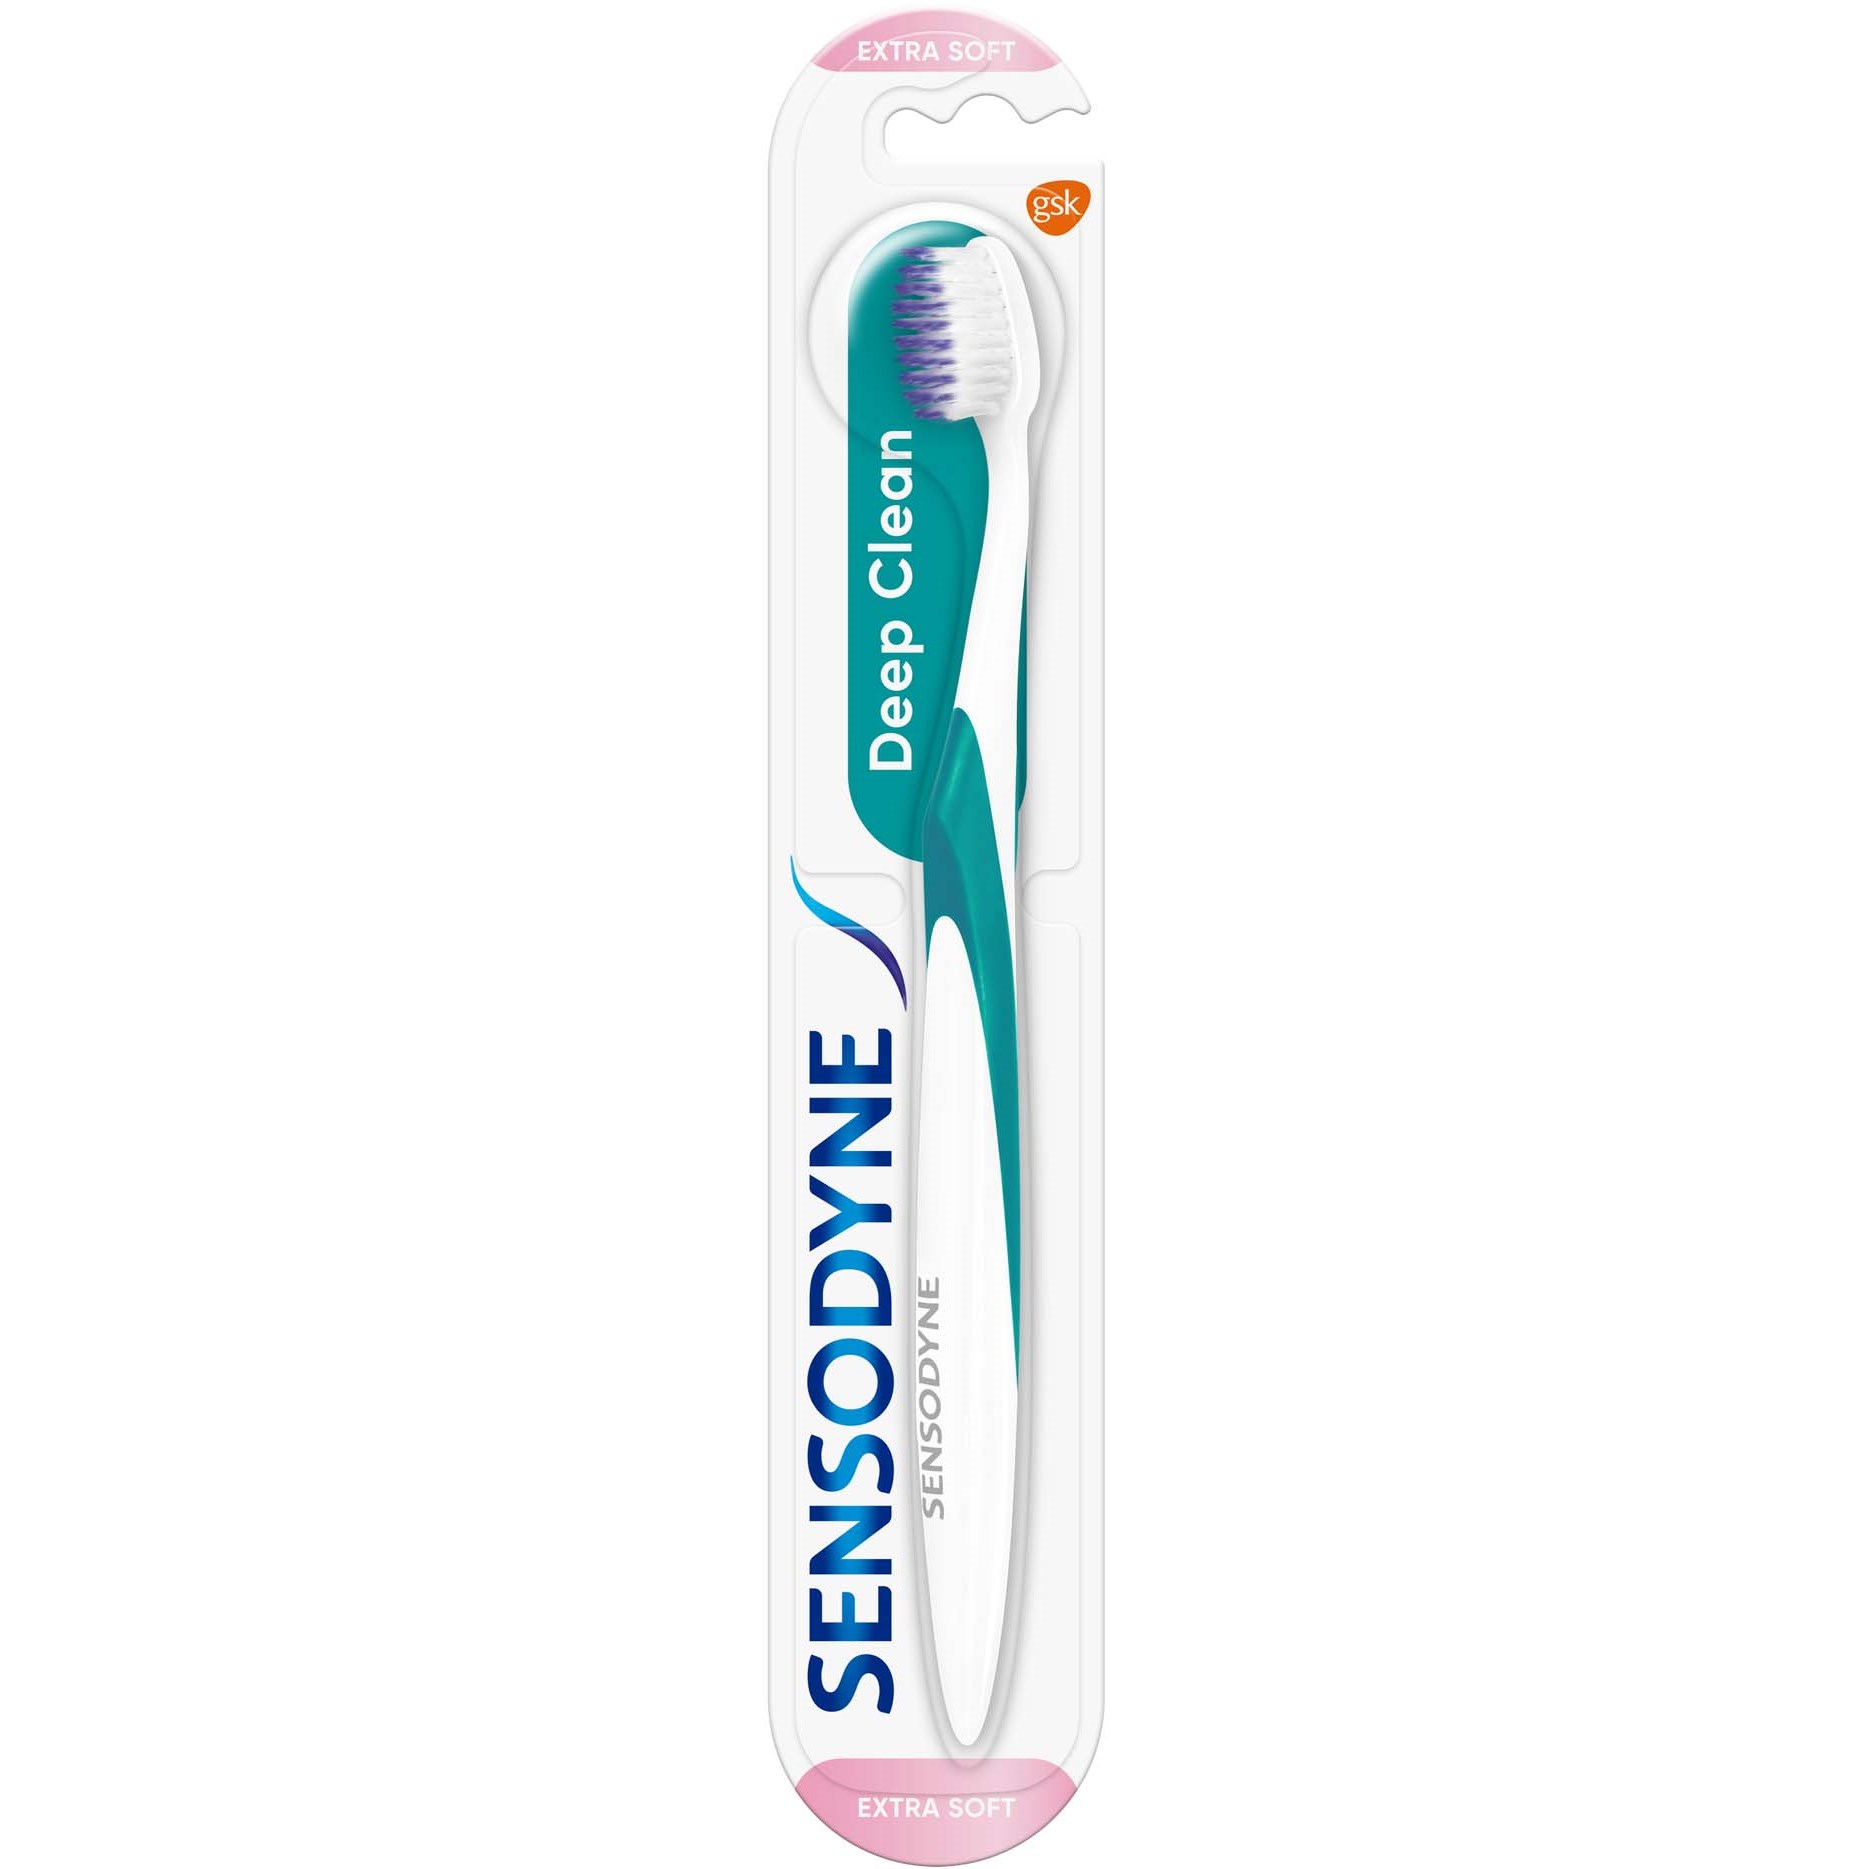 Läs mer om Sensodyne Deep Clean Extra Soft Toothbrush